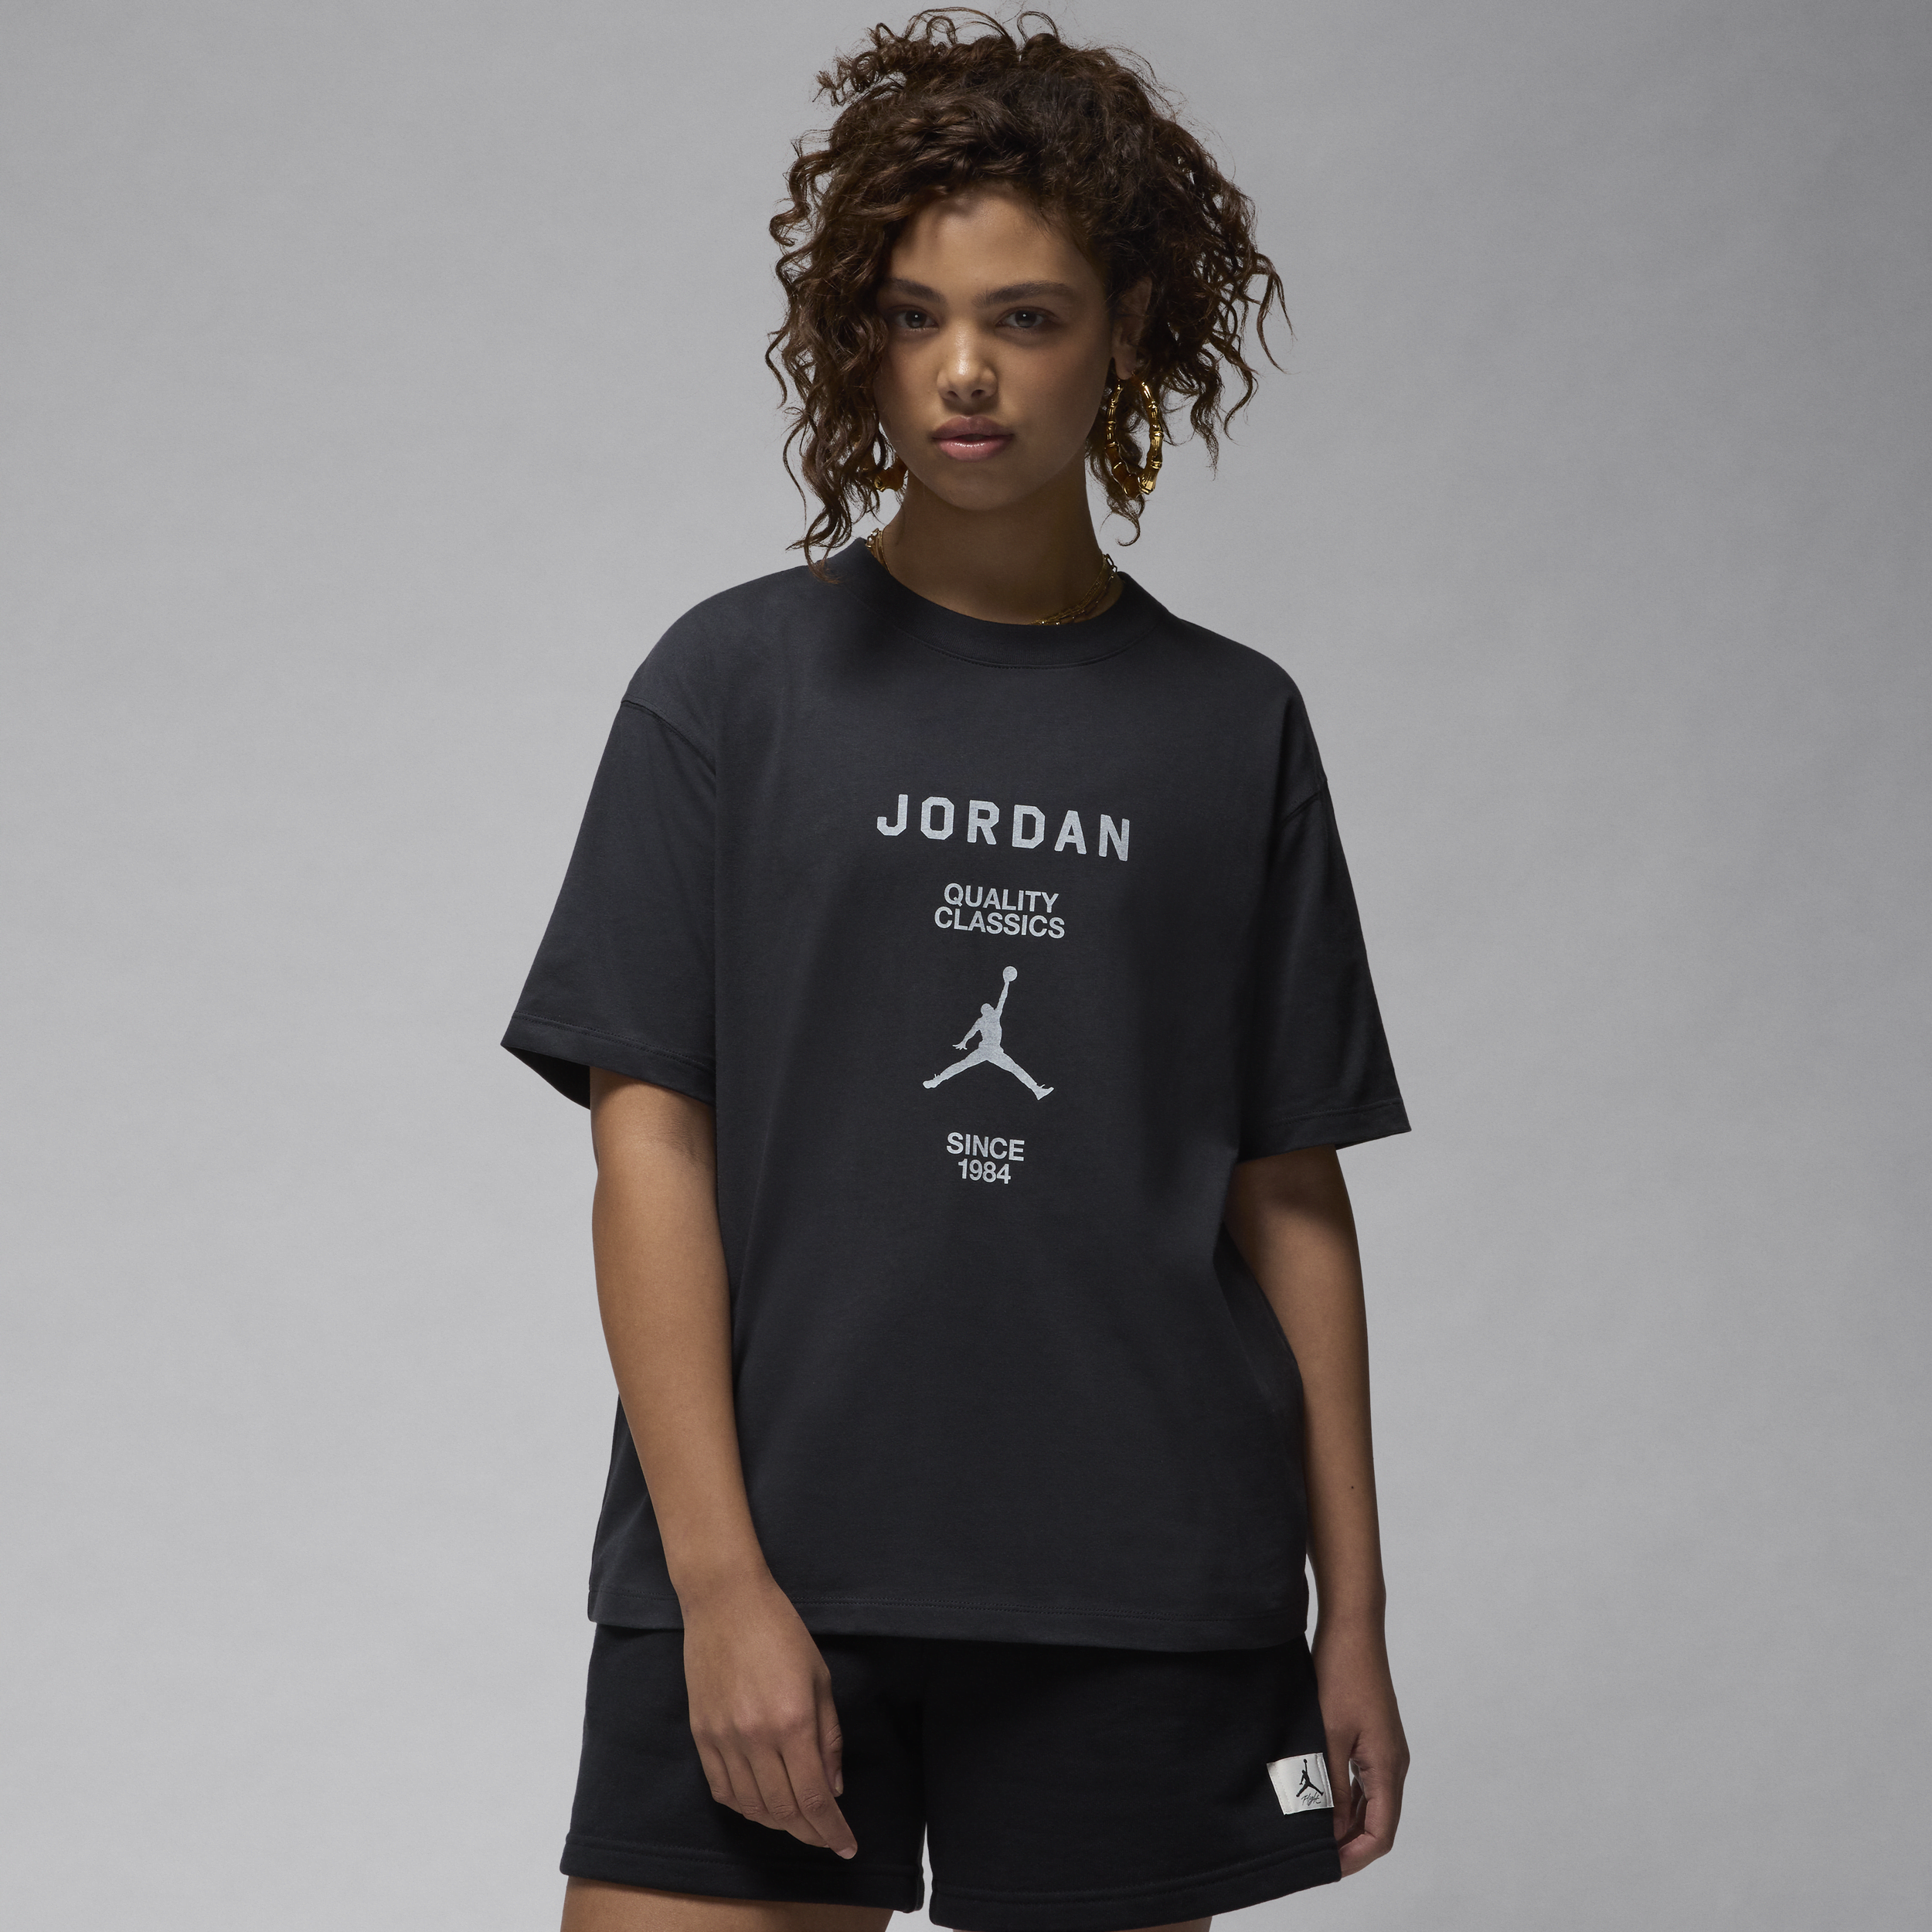 Jordan-kæreste-T-shirt til kvinder - sort